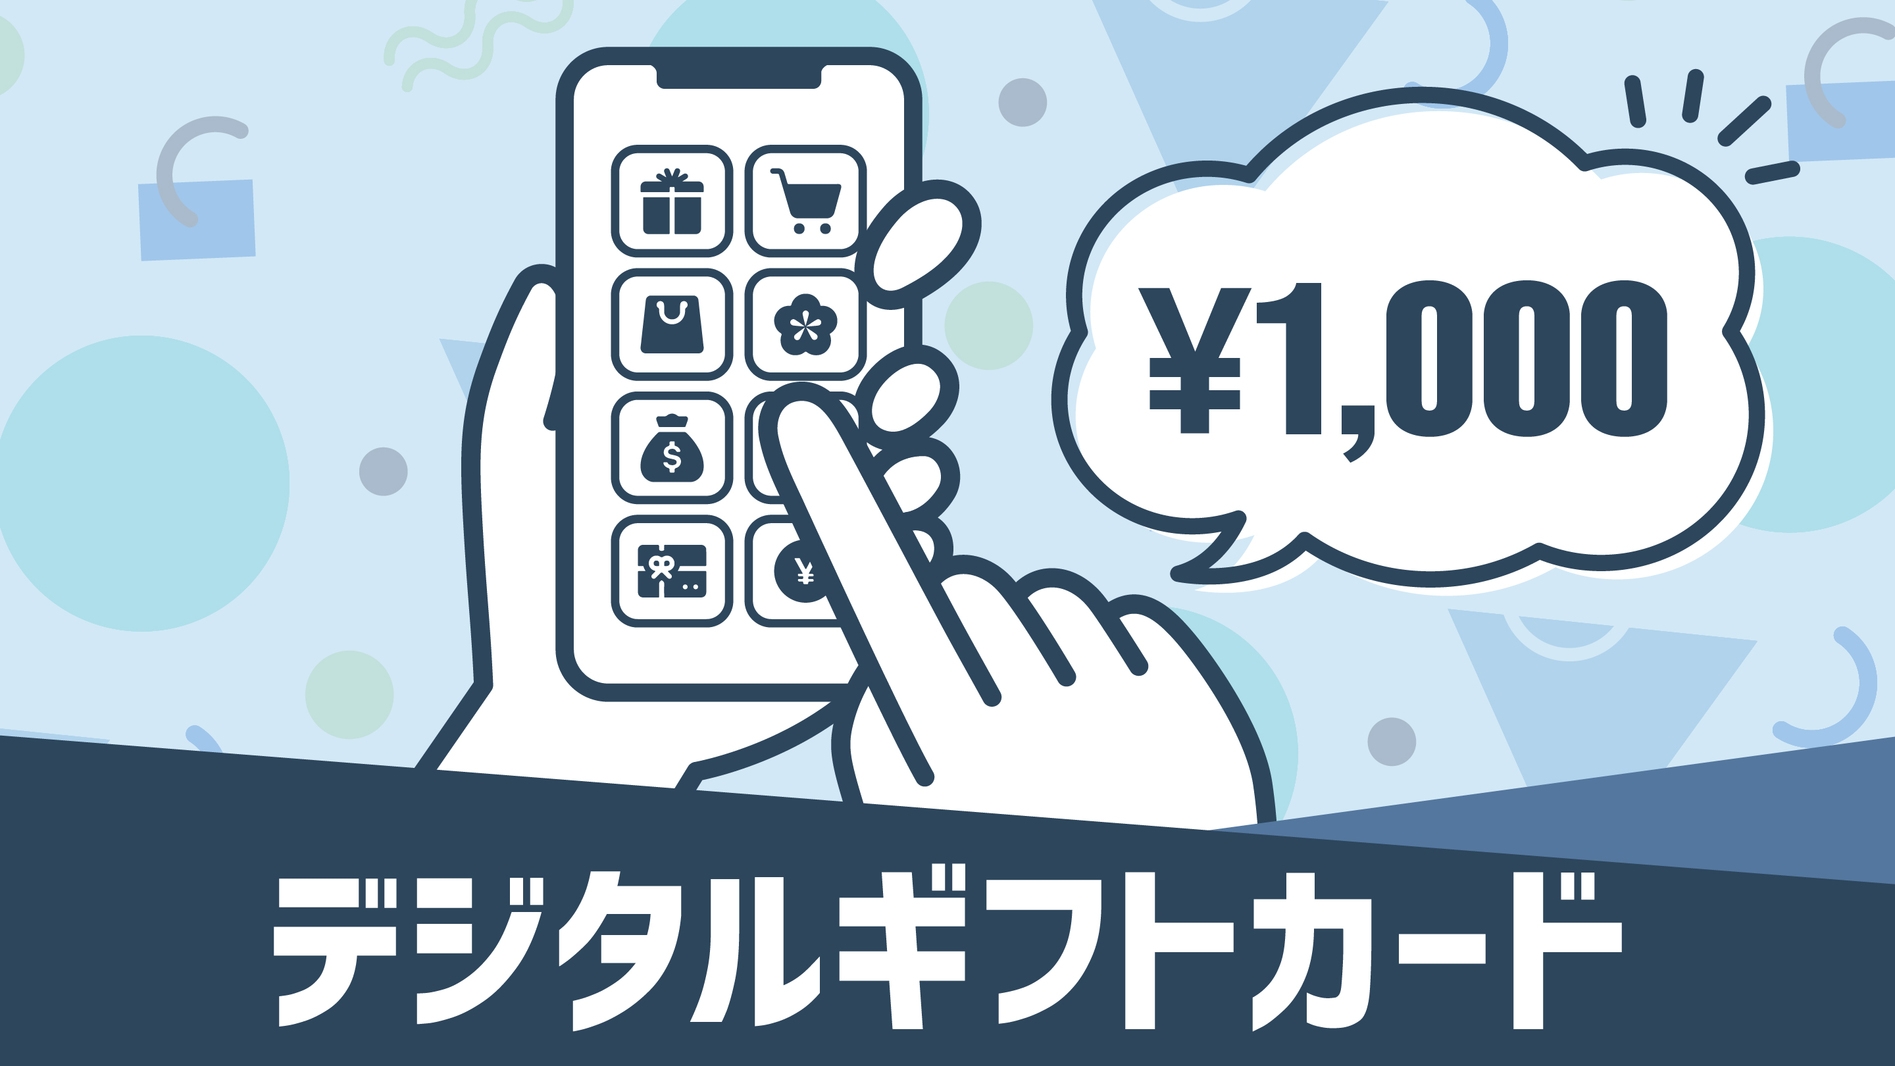 マルチギフトカード1000円付プラン【バイキング朝食付】